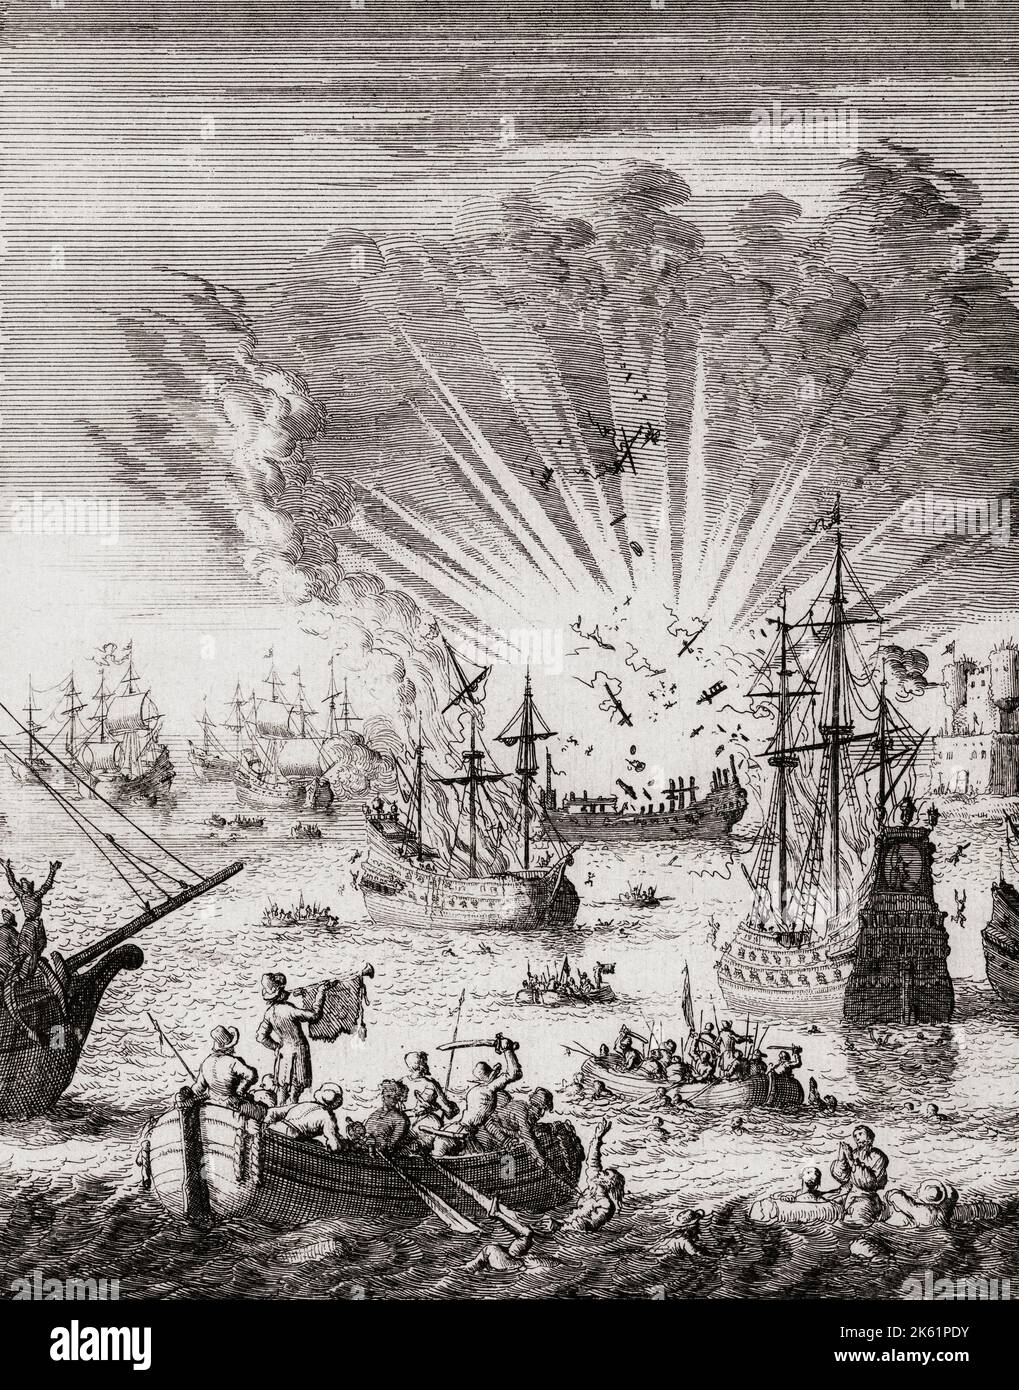 Seeschlacht zwischen der Niederländischen Republik und dem Portugiesischen Reich im Niederländisch-Portugiesischen Krieg bei Goa am 30. September 1639. Auf dem Bild ist die portugiesische Galeone São Boaventura zu sehen, die explodiert, nachdem sie Feuer fing. Nach einem Druck von Jan Luyken. Stockfoto